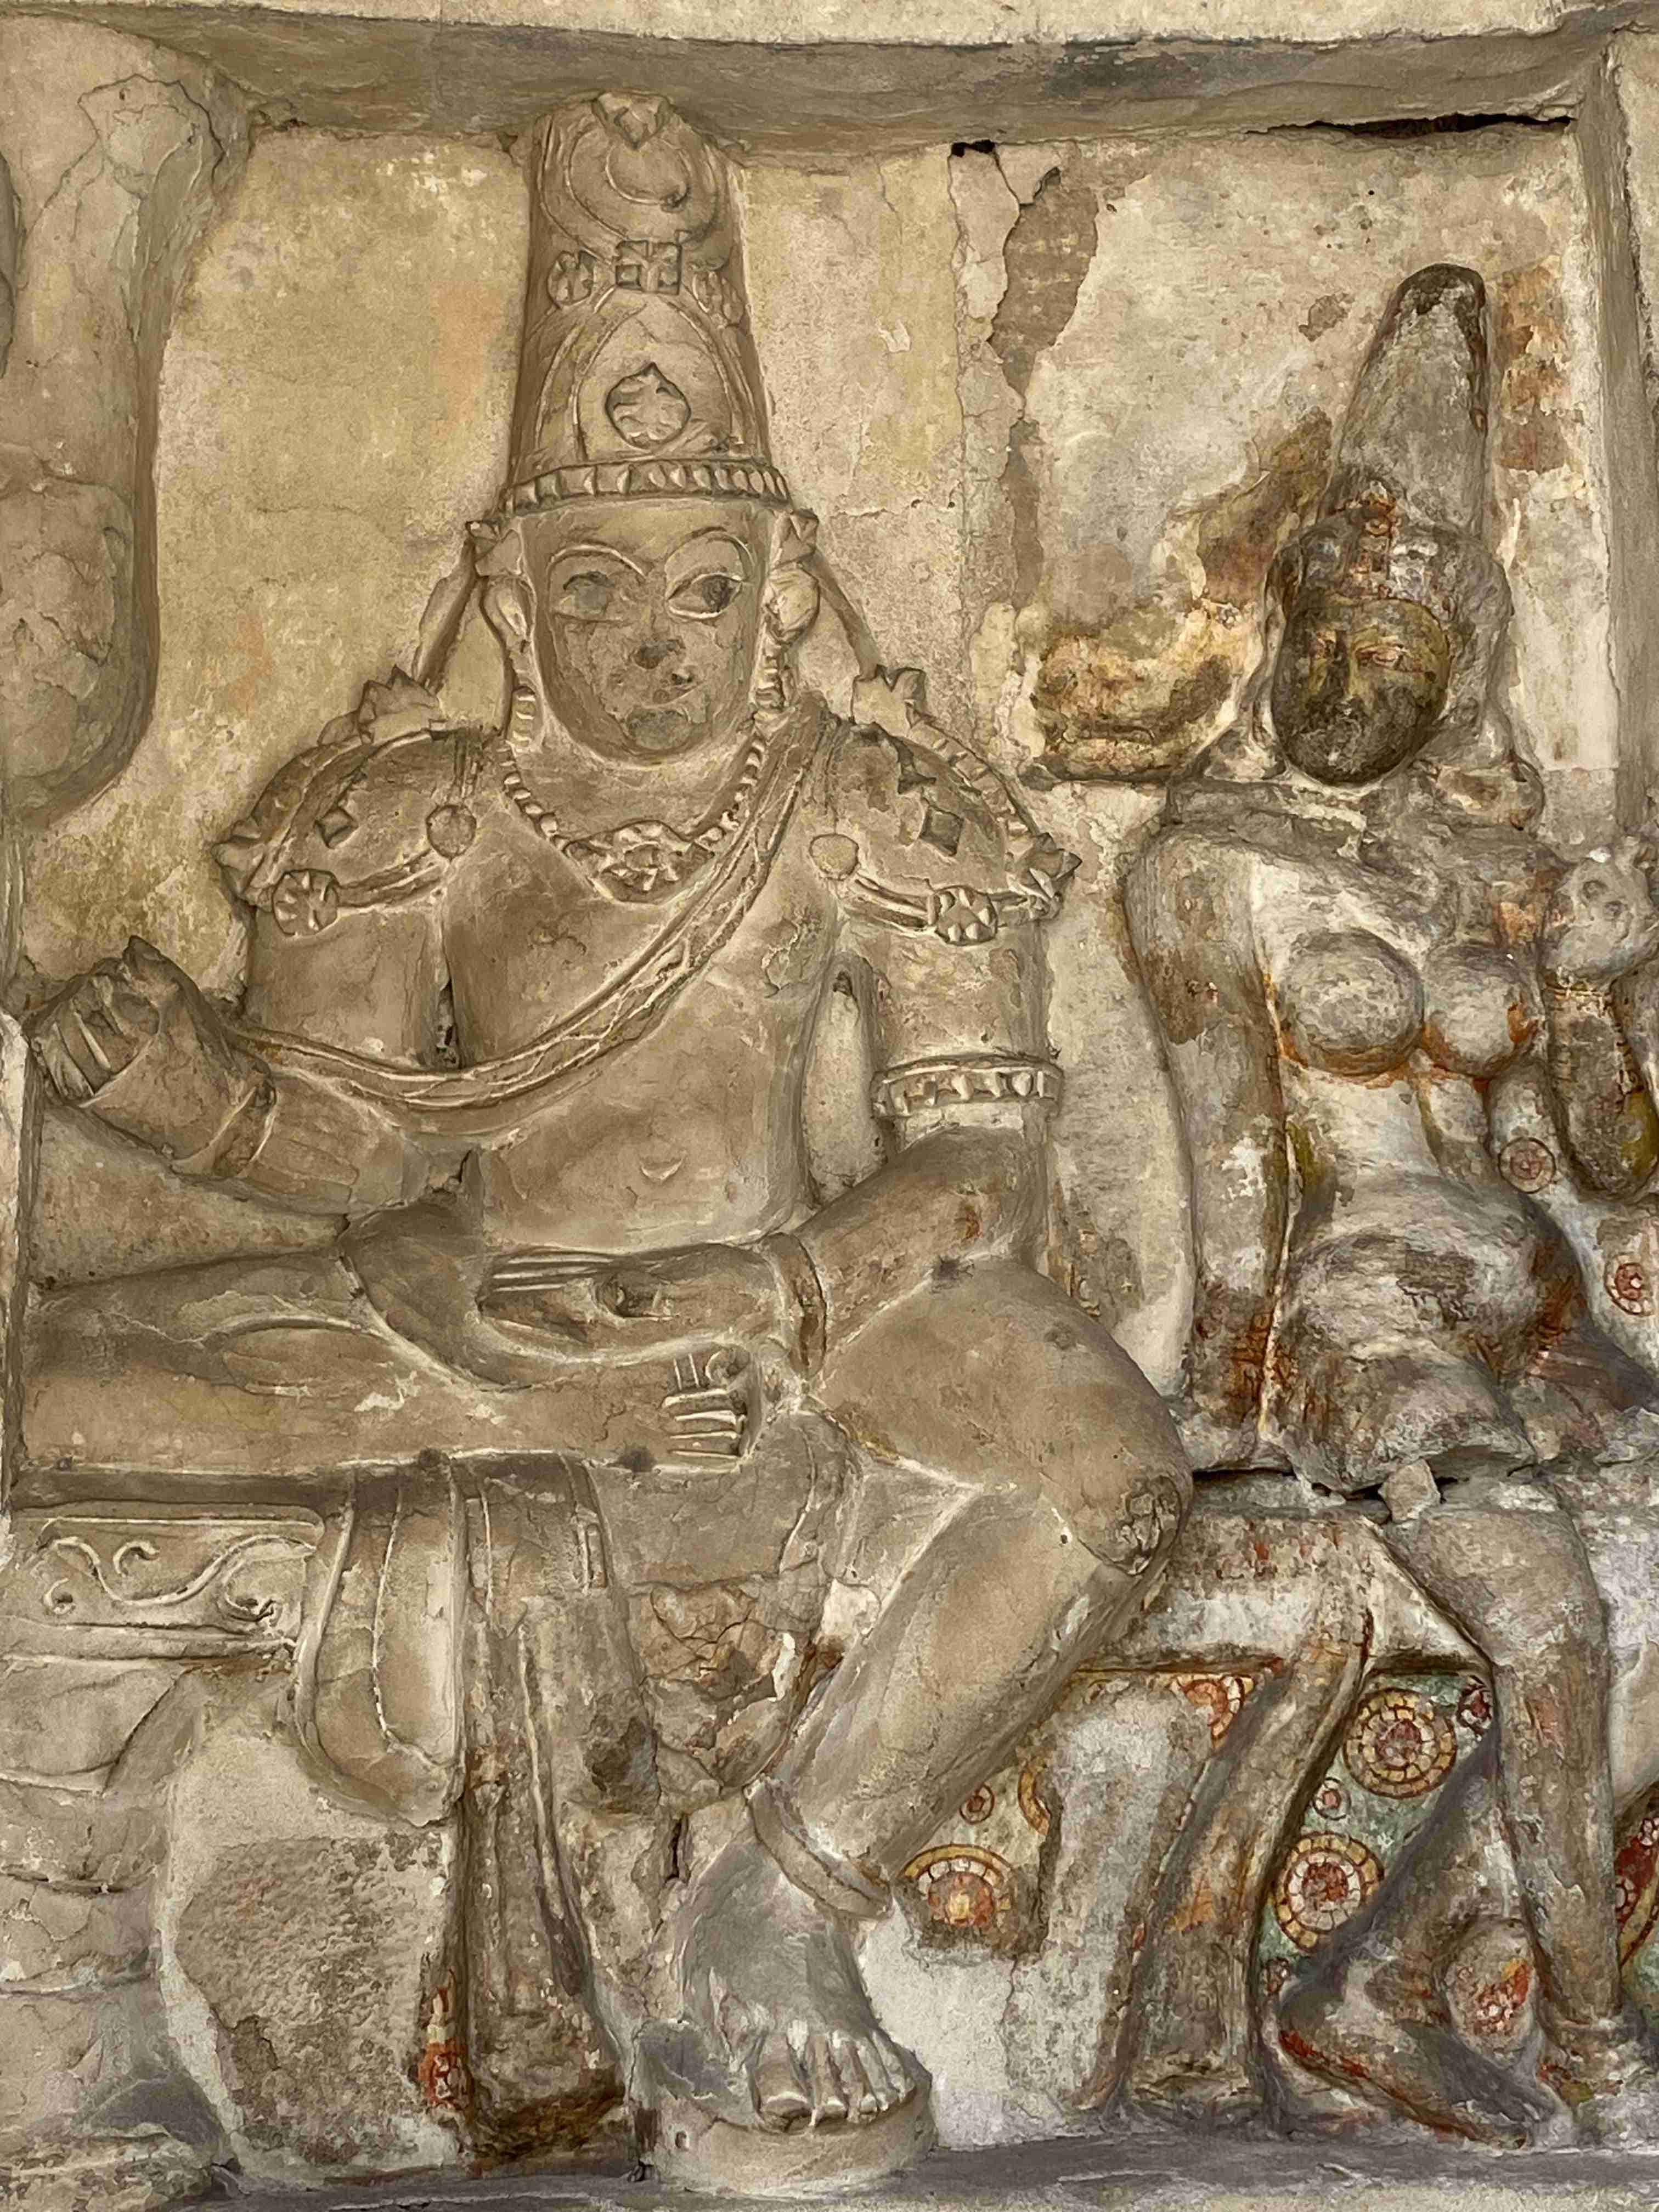 <b>Kailasanathar Temple (Pic Courtesy - Preeta Narain)</b>